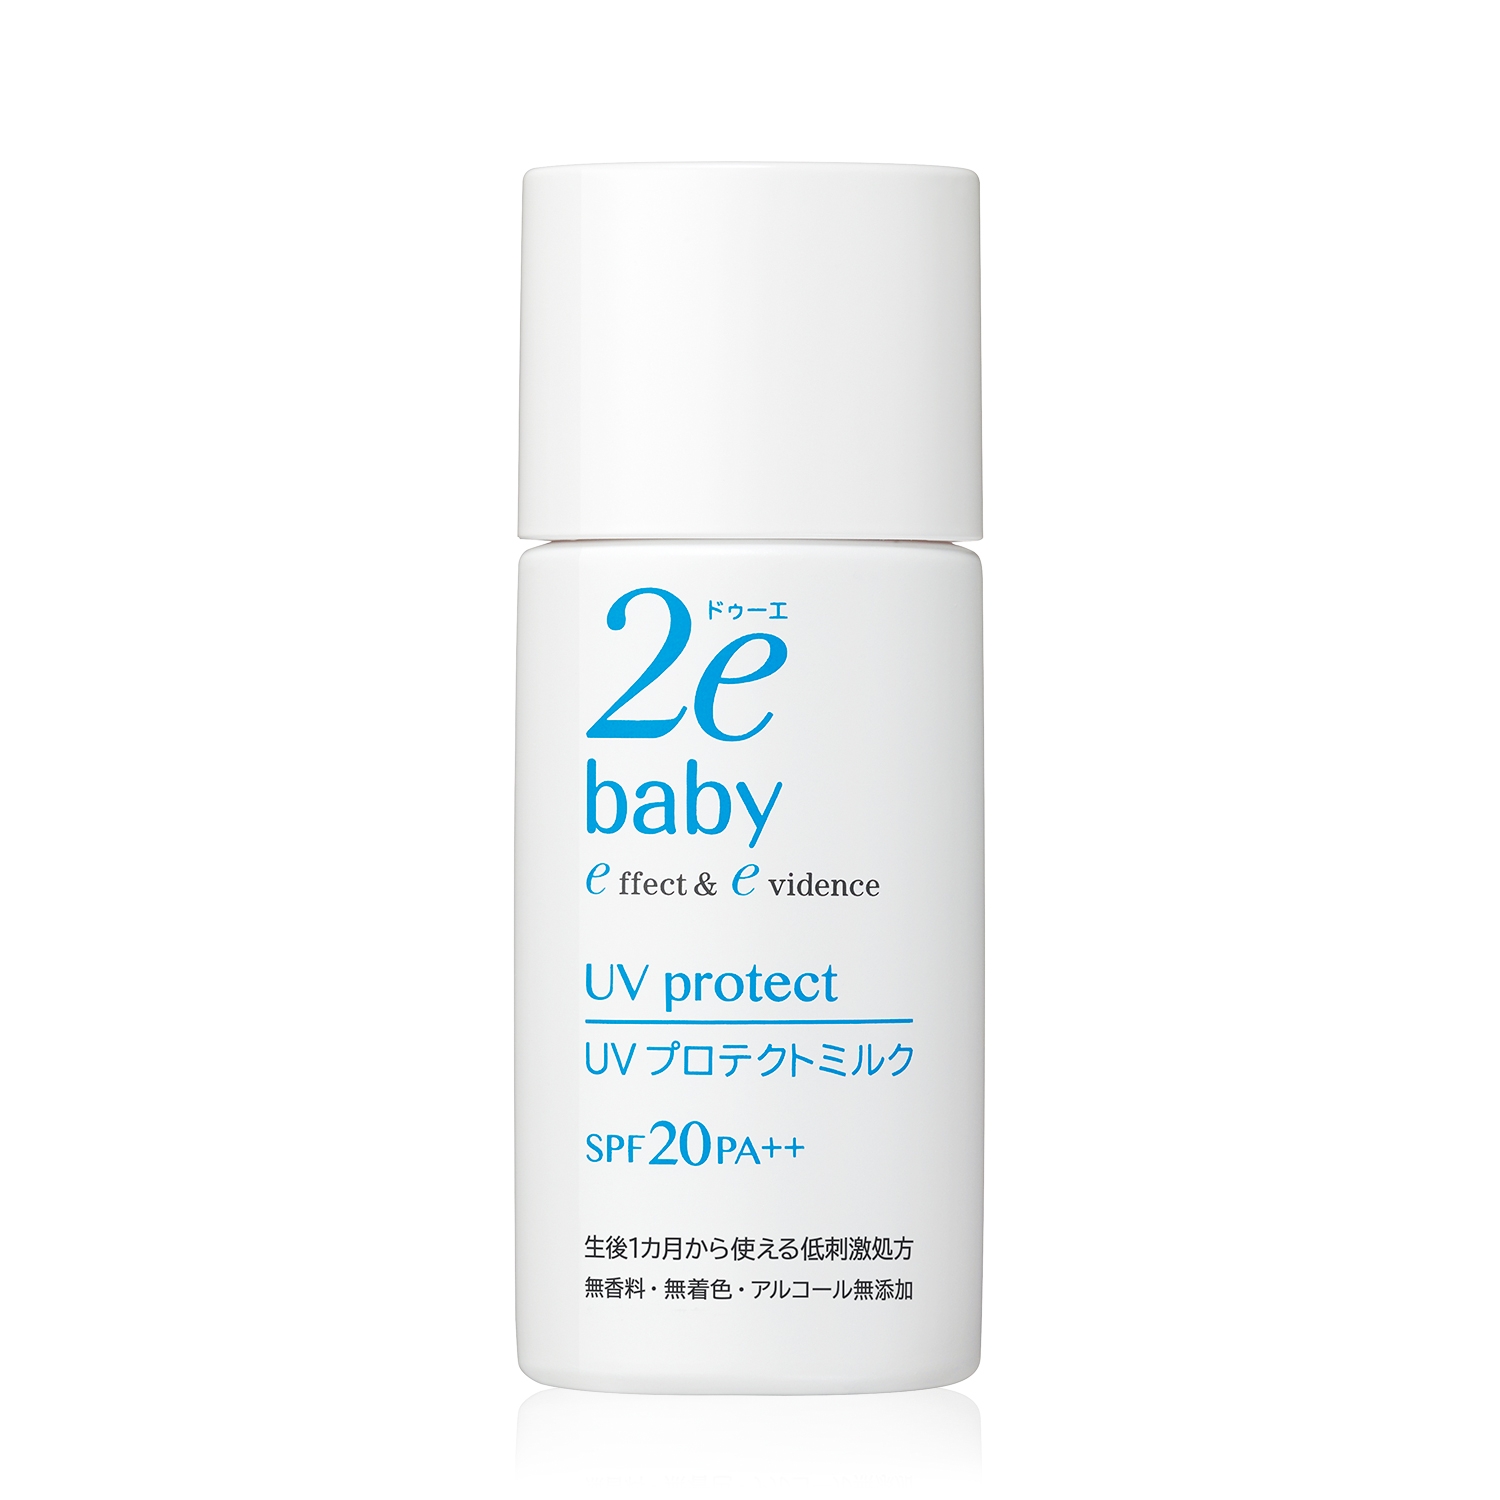 赤ちゃんを守る日焼け止め人気ブランドランキング25選 虫よけ兼用もおすすめ ベストプレゼントガイド